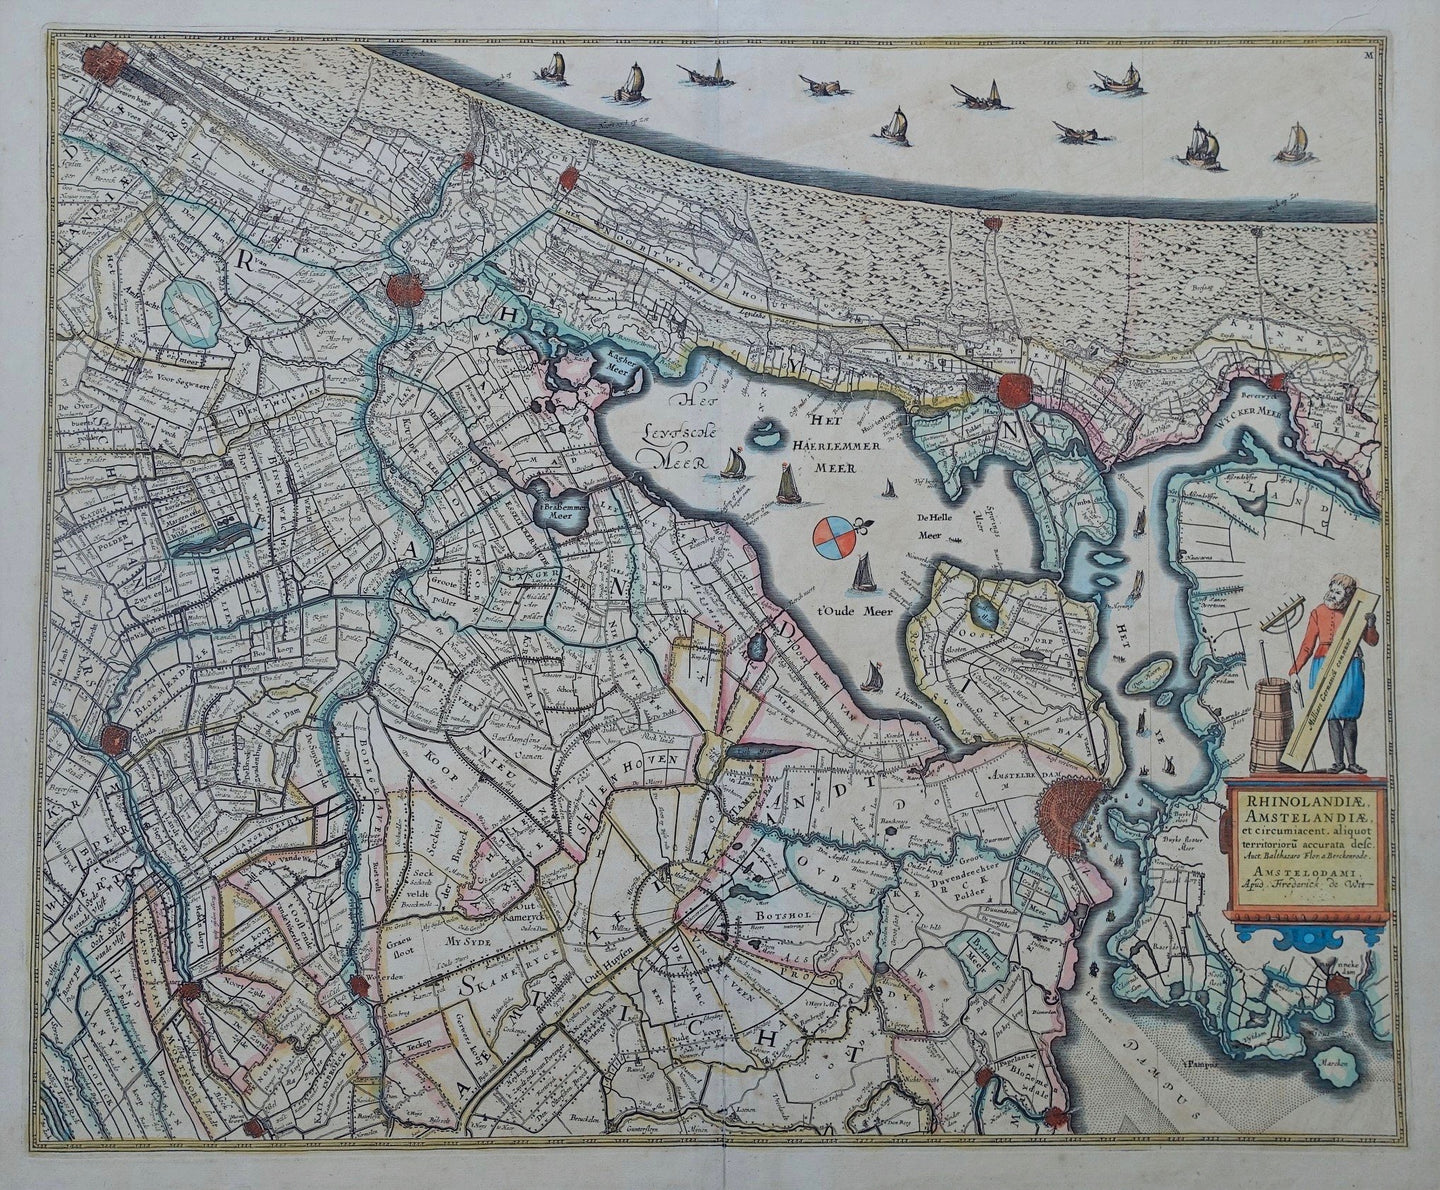 Rijnland en Amstelland - Fredrick de Wit - ca 1684